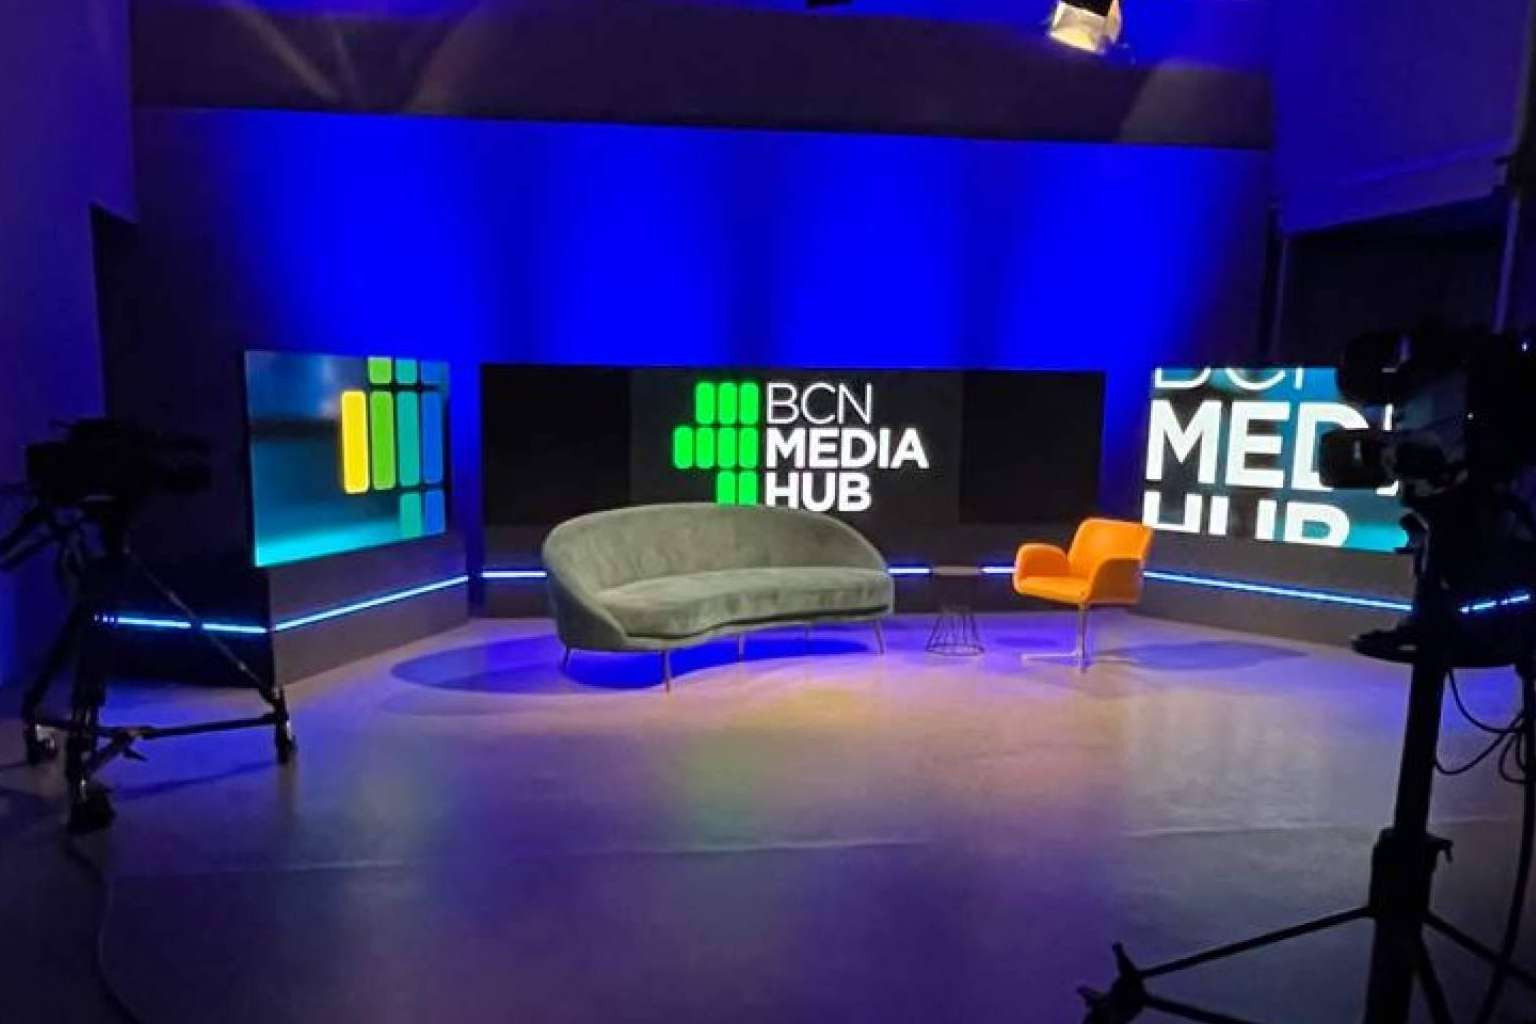  La productora BCN Media HUB inaugura un nuevo espacio en Barcelona destinado a alojar producciones audiovisuales de todo tipo 